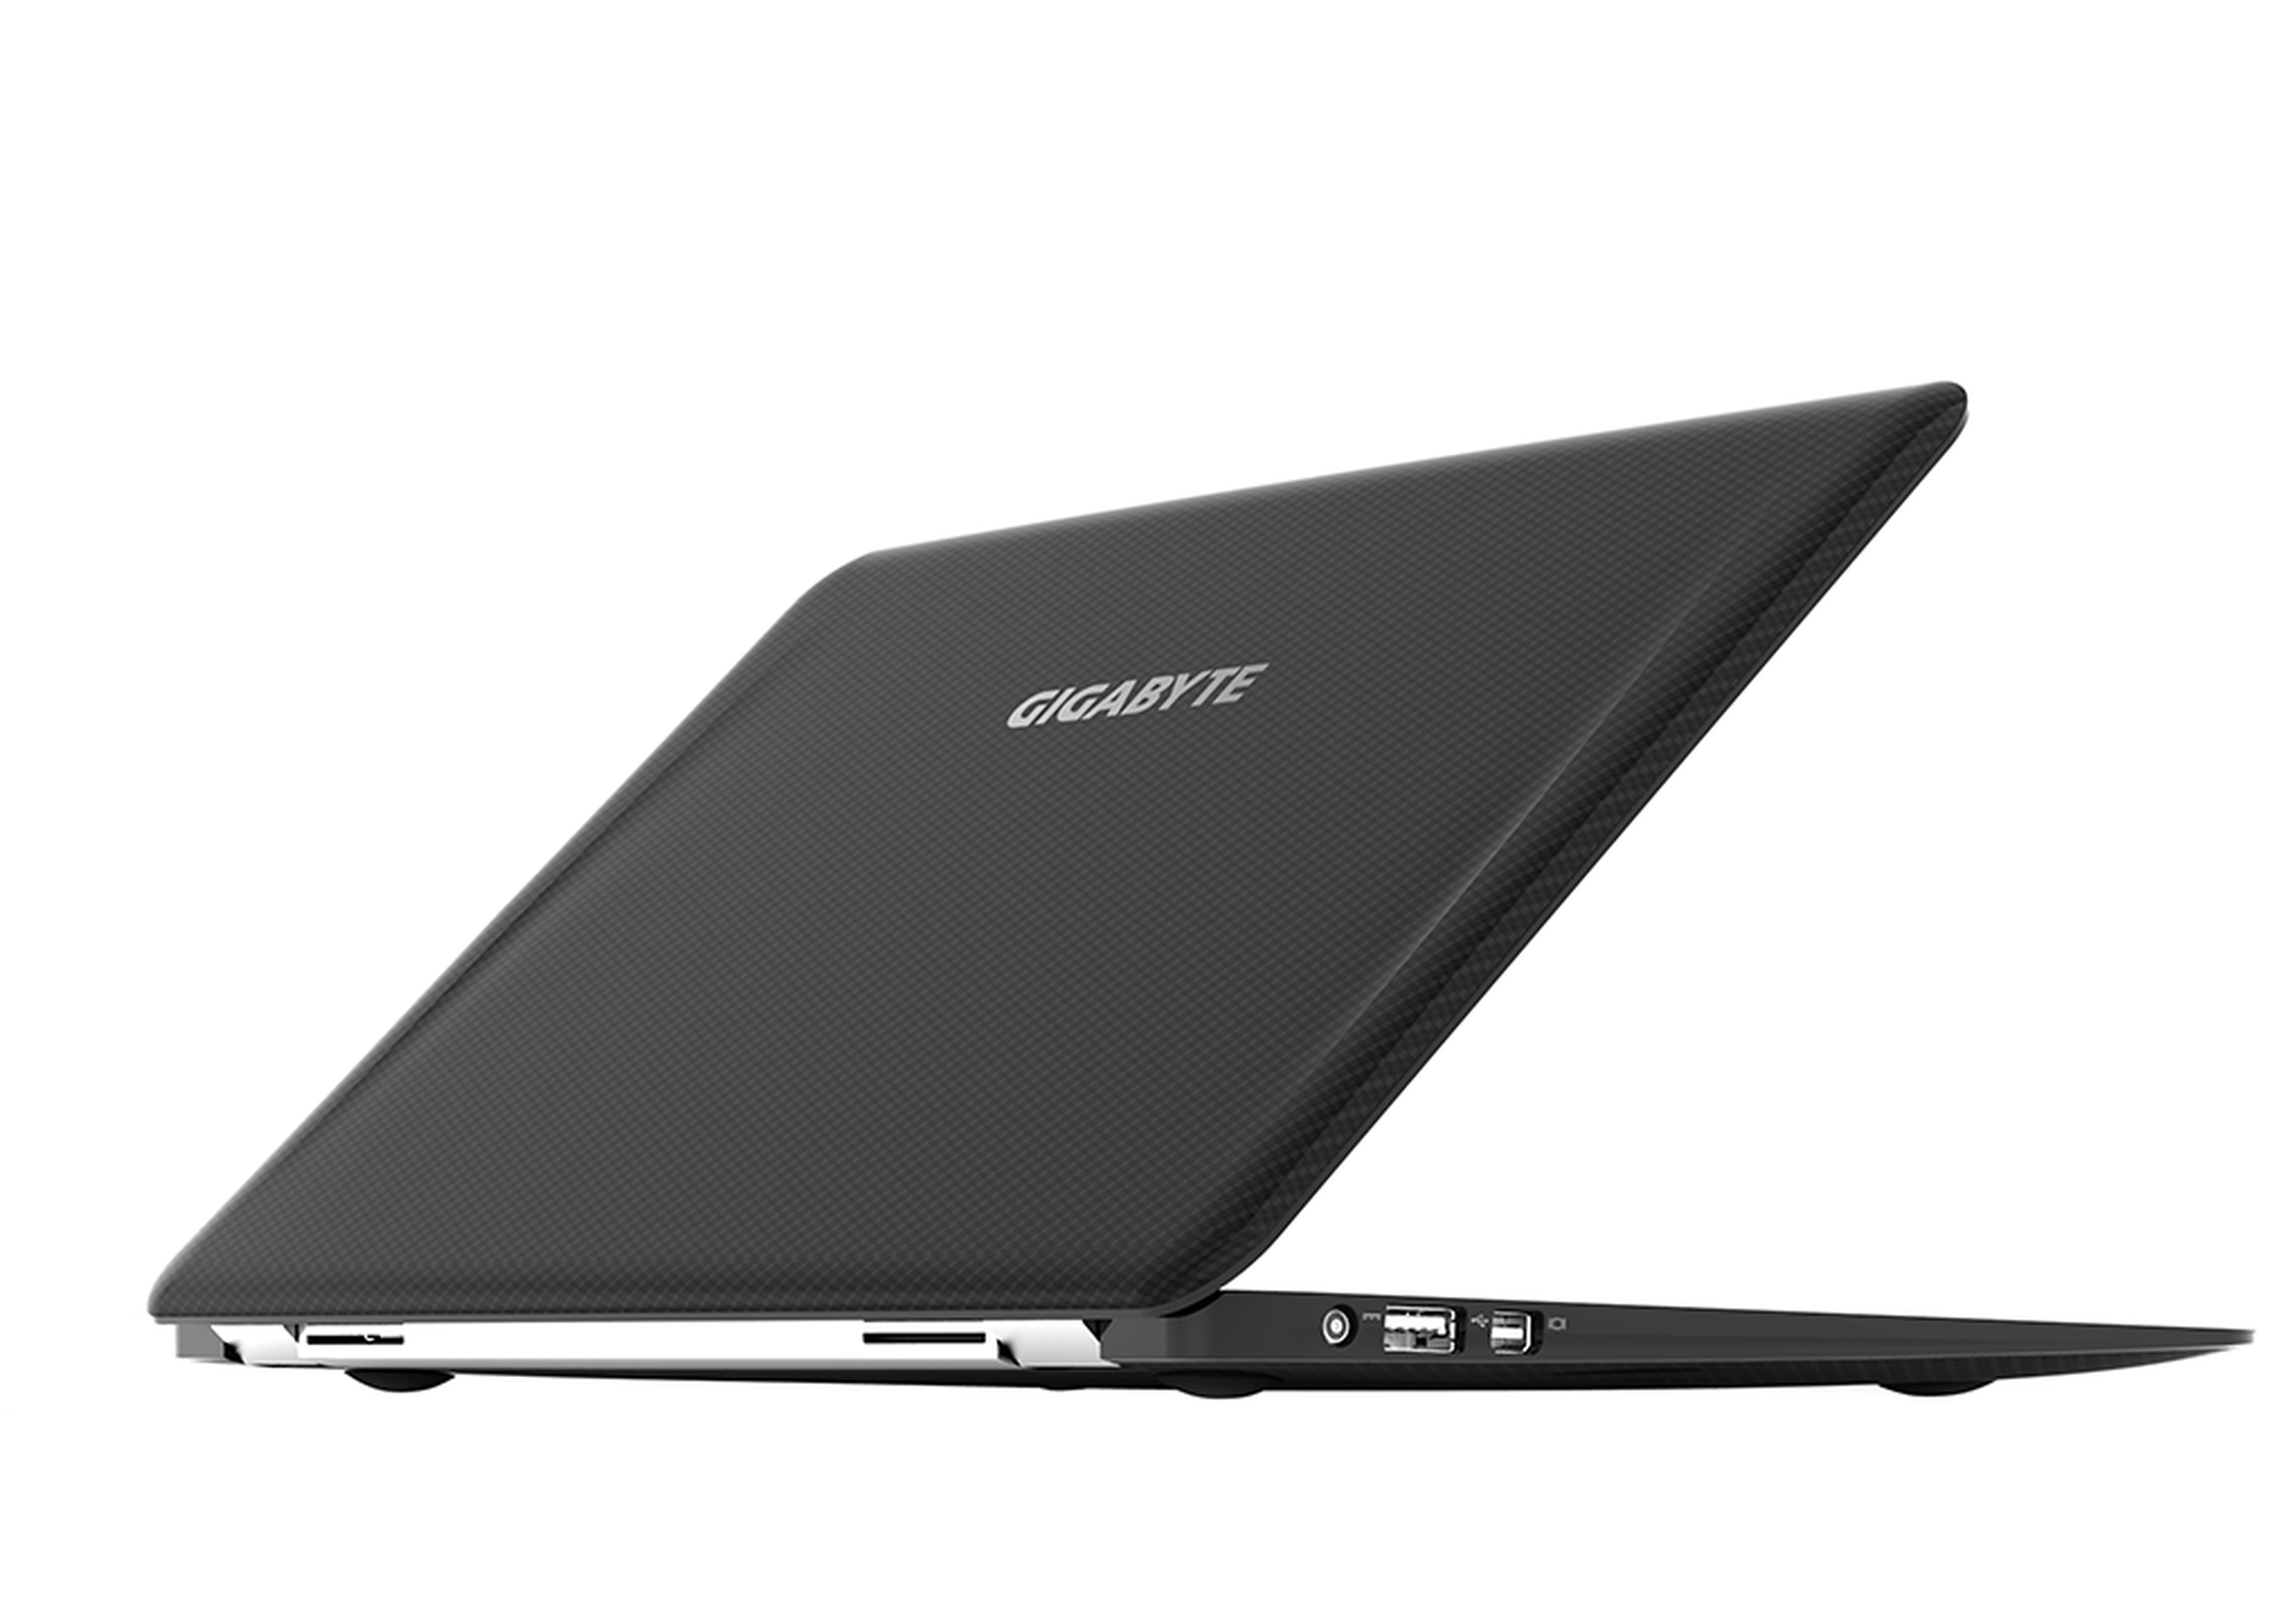 Gigabyte X-11 carbon fiber laptop